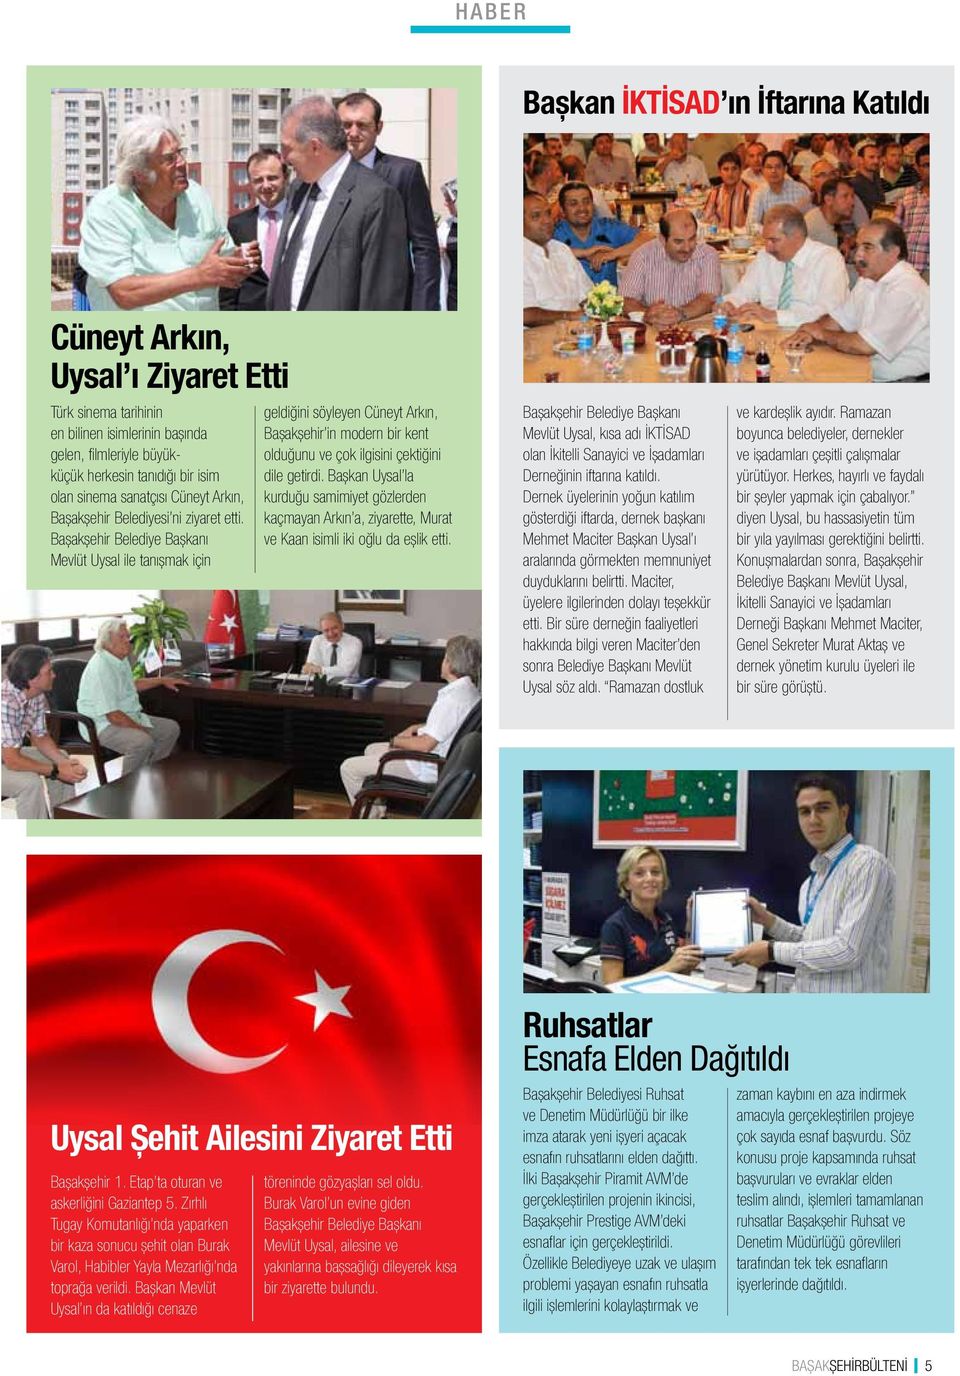 Başakşehir Belediye Başkanı Mevlüt Uysal ile tanışmak için geldiğini söyleyen Cüneyt Arkın, Başakşehir in modern bir kent olduğunu ve çok ilgisini çektiğini dile getirdi.